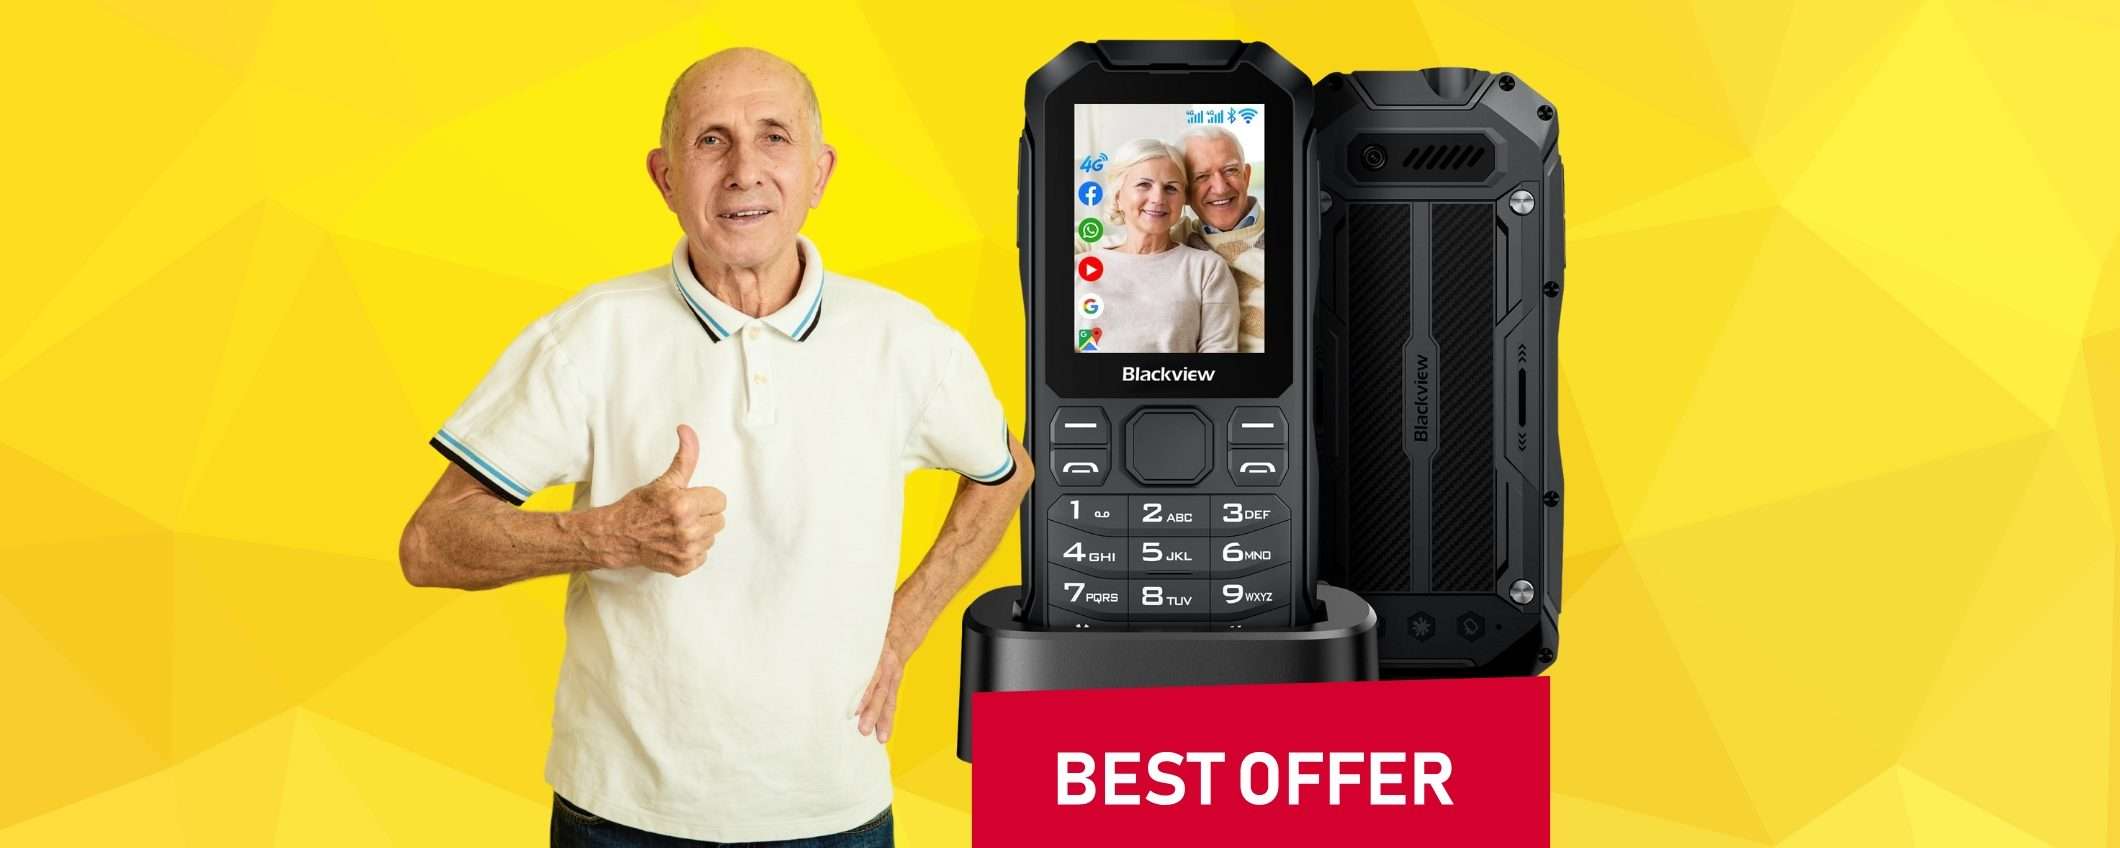 Cellulare per anziani INDISTRUTTIBILE, 4G e Dual Sim, SOLO 59,99€